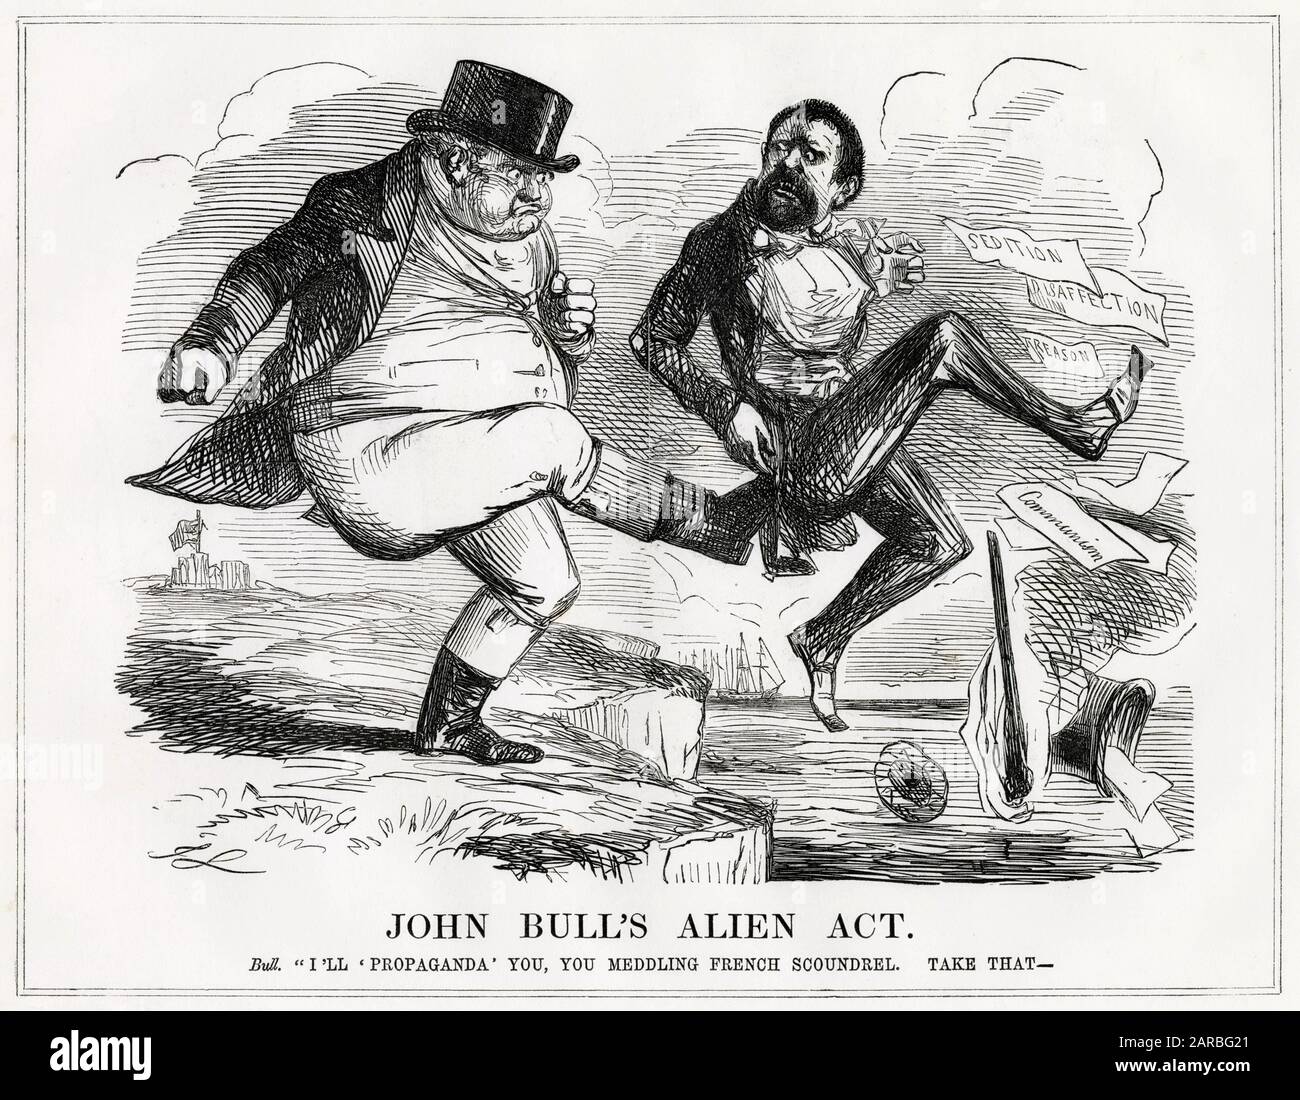 Cartoon, John Bull's Alien Act -- ein satirischer Kommentar zu einem Vorfall, der sich am 10. April 1848 ereignete, als ein Franzose schreien hörte, dass alle Engländer Feiglinge seien, wofür er von einem Metzgerjungen niedergeschlagen wurde. Stockfoto